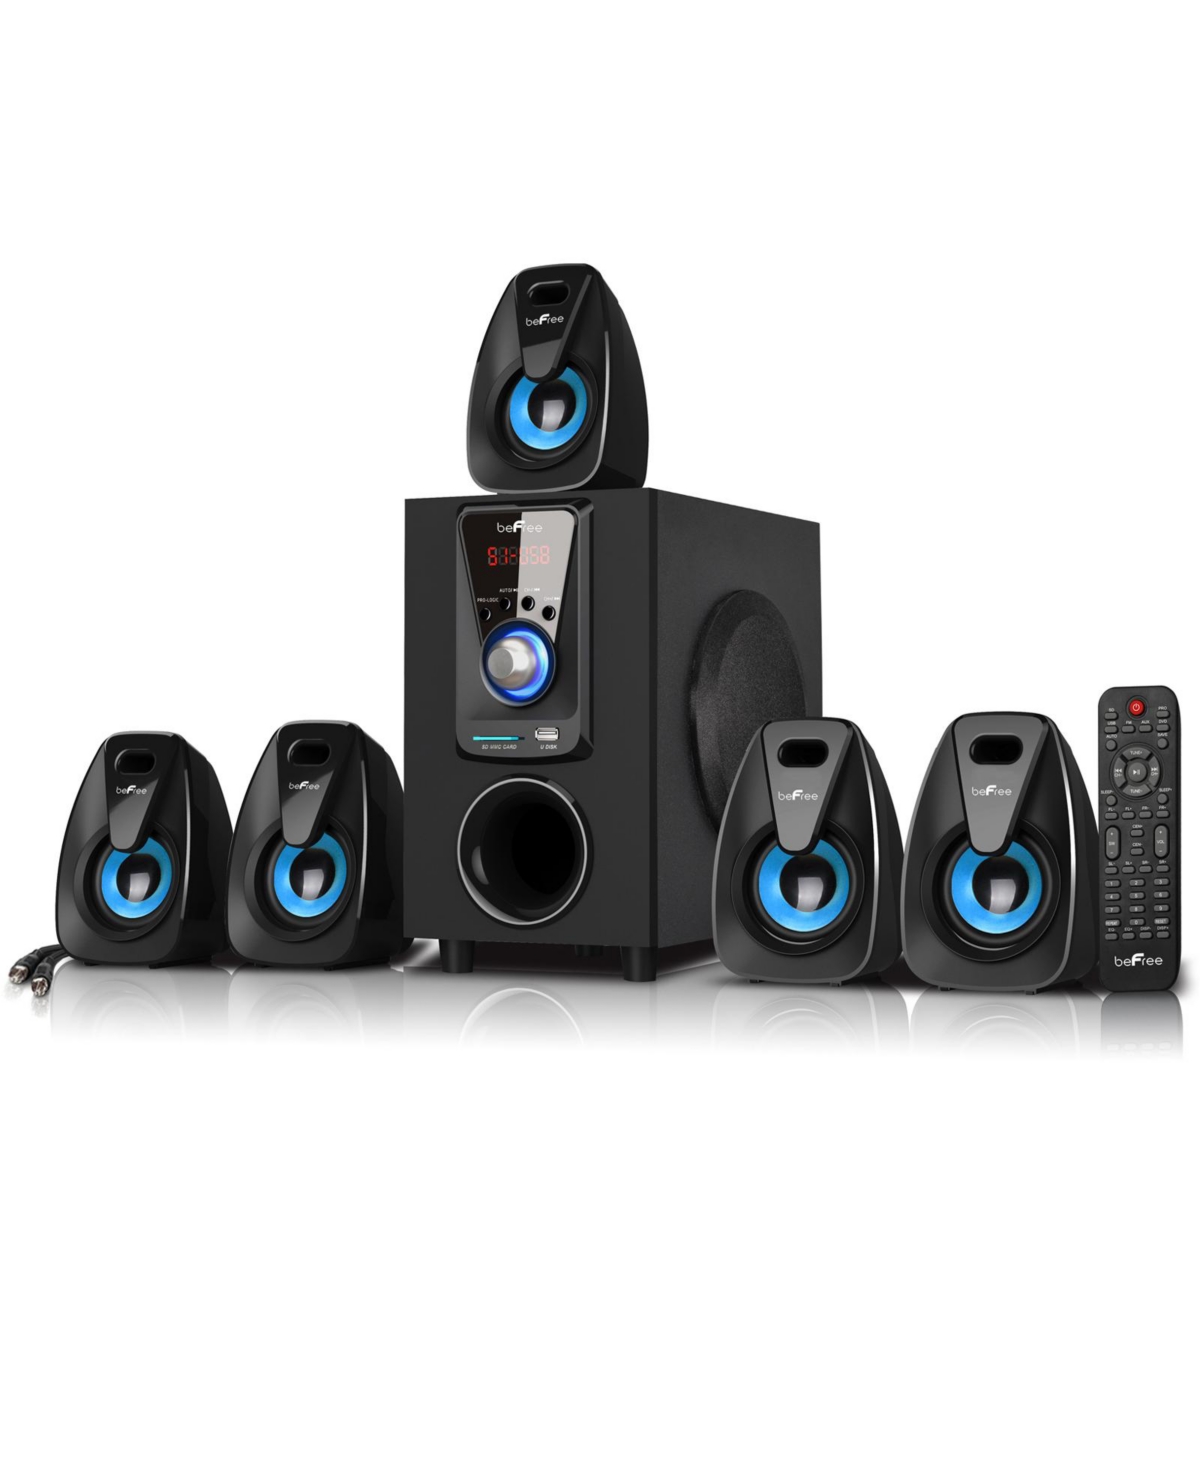 beFree Sound 5.1 Channel Bluetooth Surround Sound Speaker System in Blue - Black